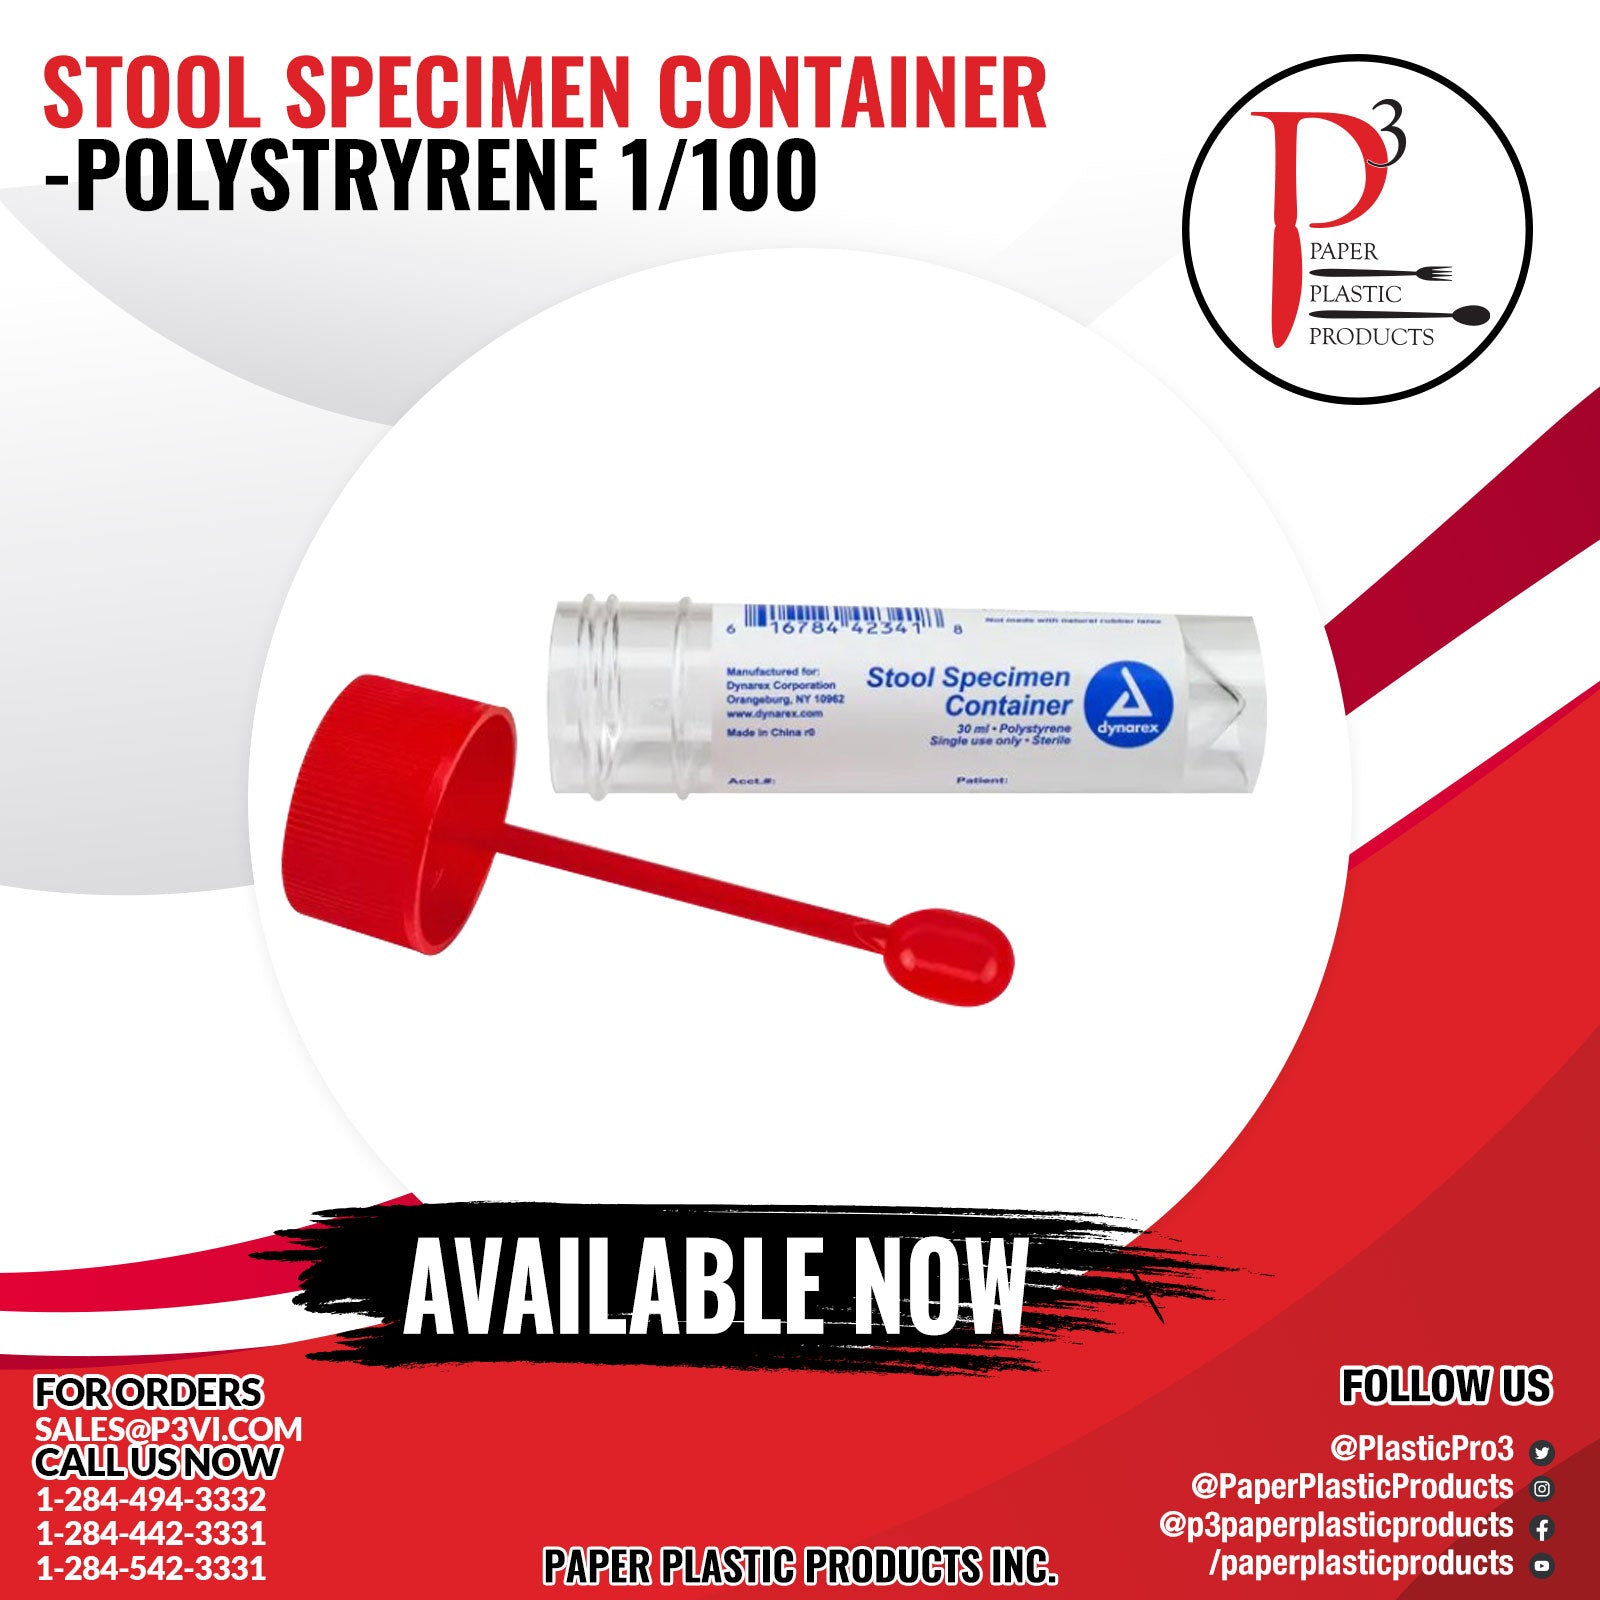 Stool Specimen Container- Polystryrene 1/100